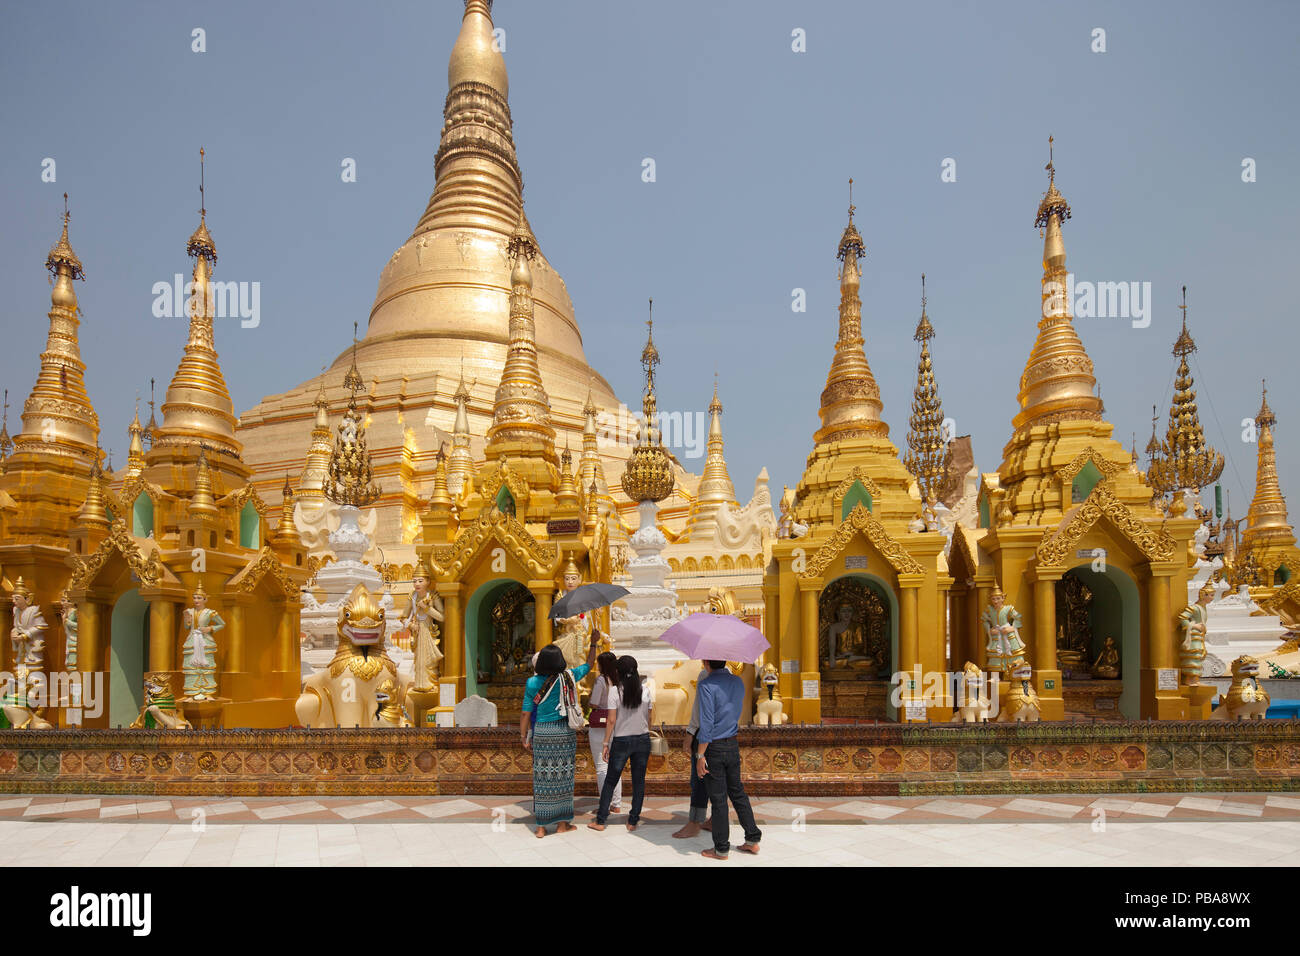 Shwedagon pagoda, Yangon, Myanmar, Asia Stock Photo